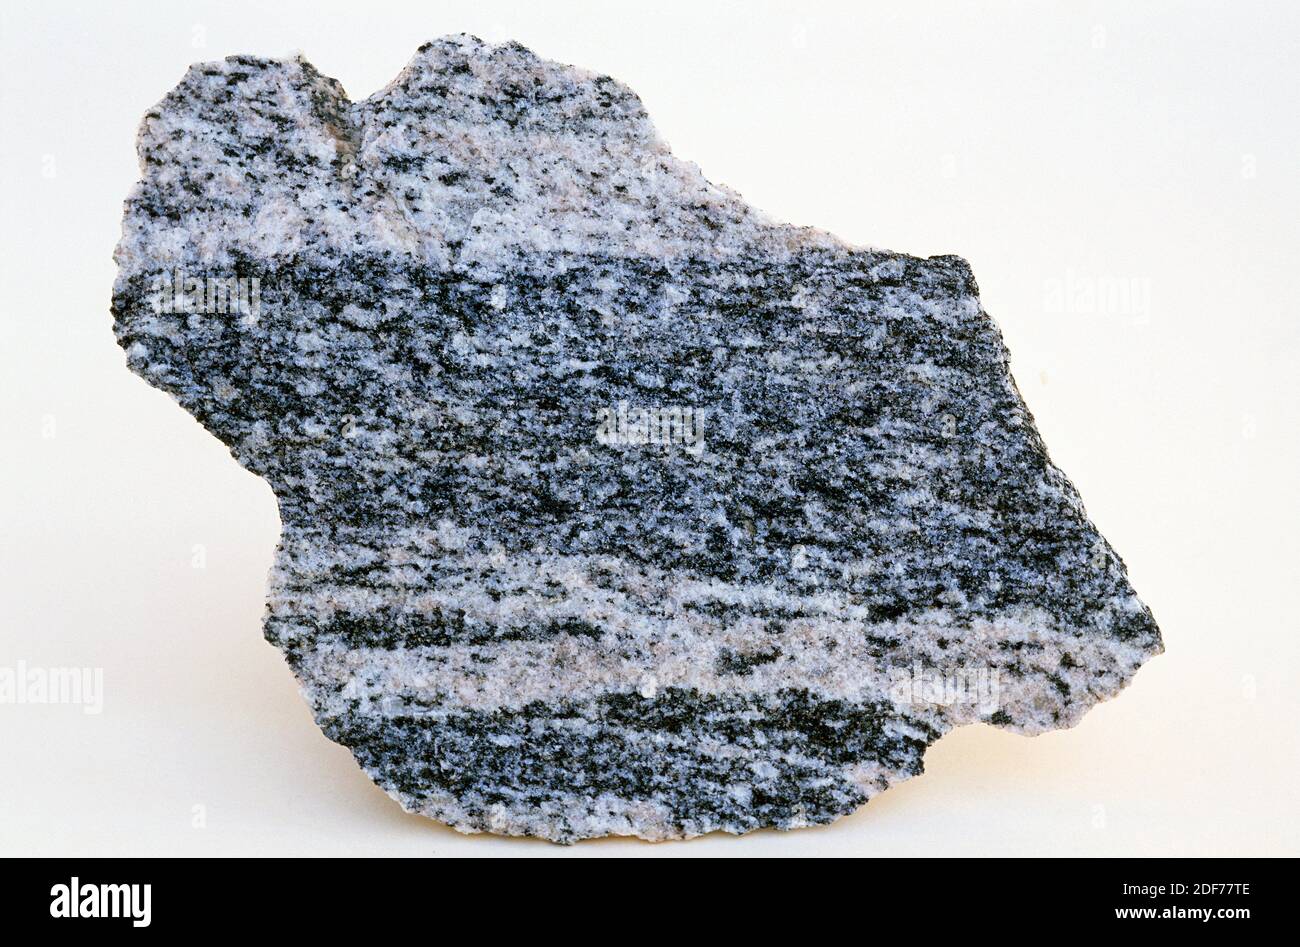 El gneiss es una roca metamórfica de alto grado de metamorfismo. Muestra. Foto de stock